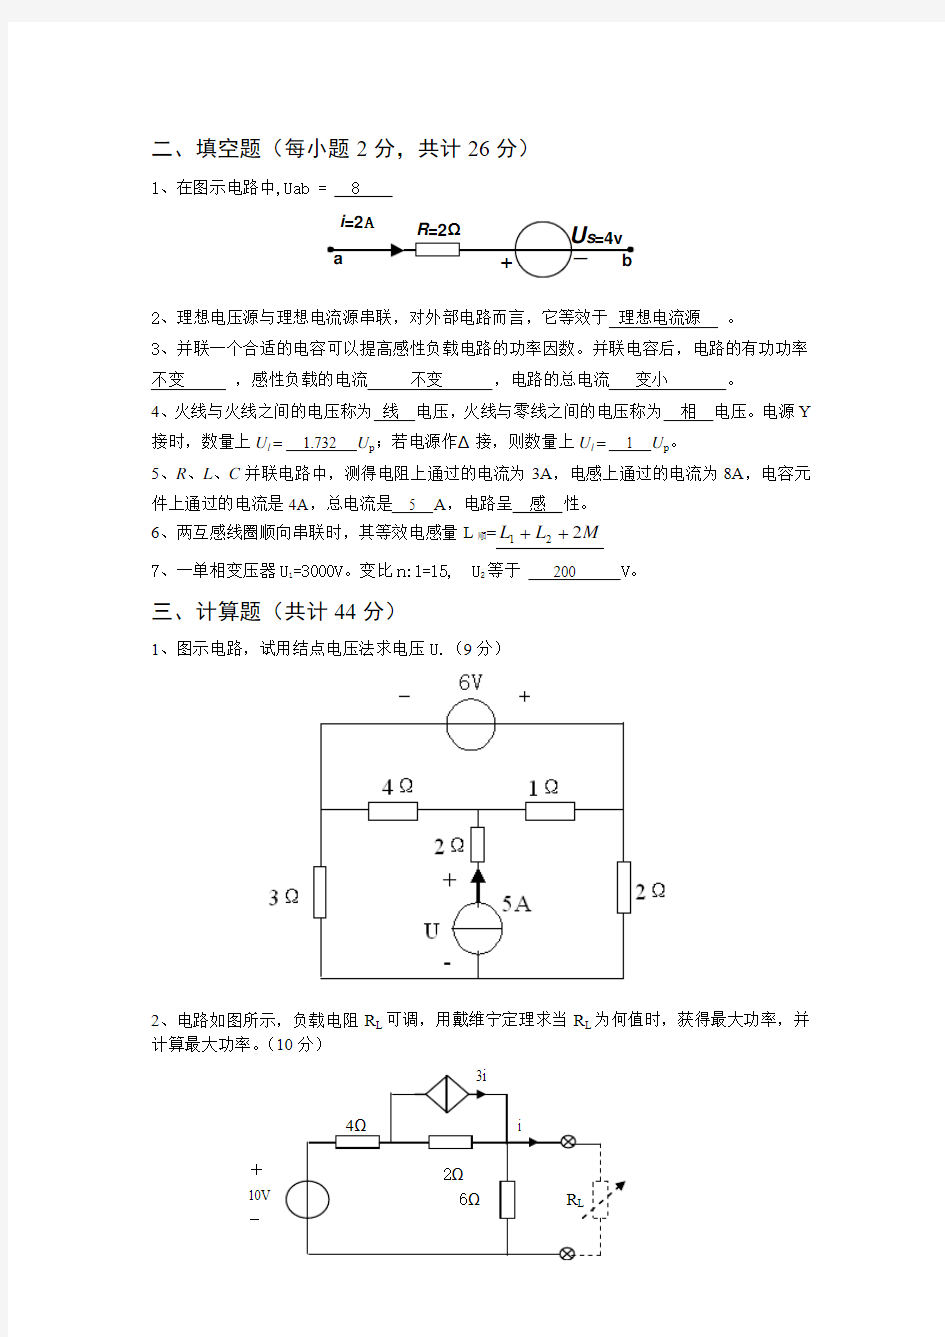 青岛科技大学电路分析复习题 高德新 版